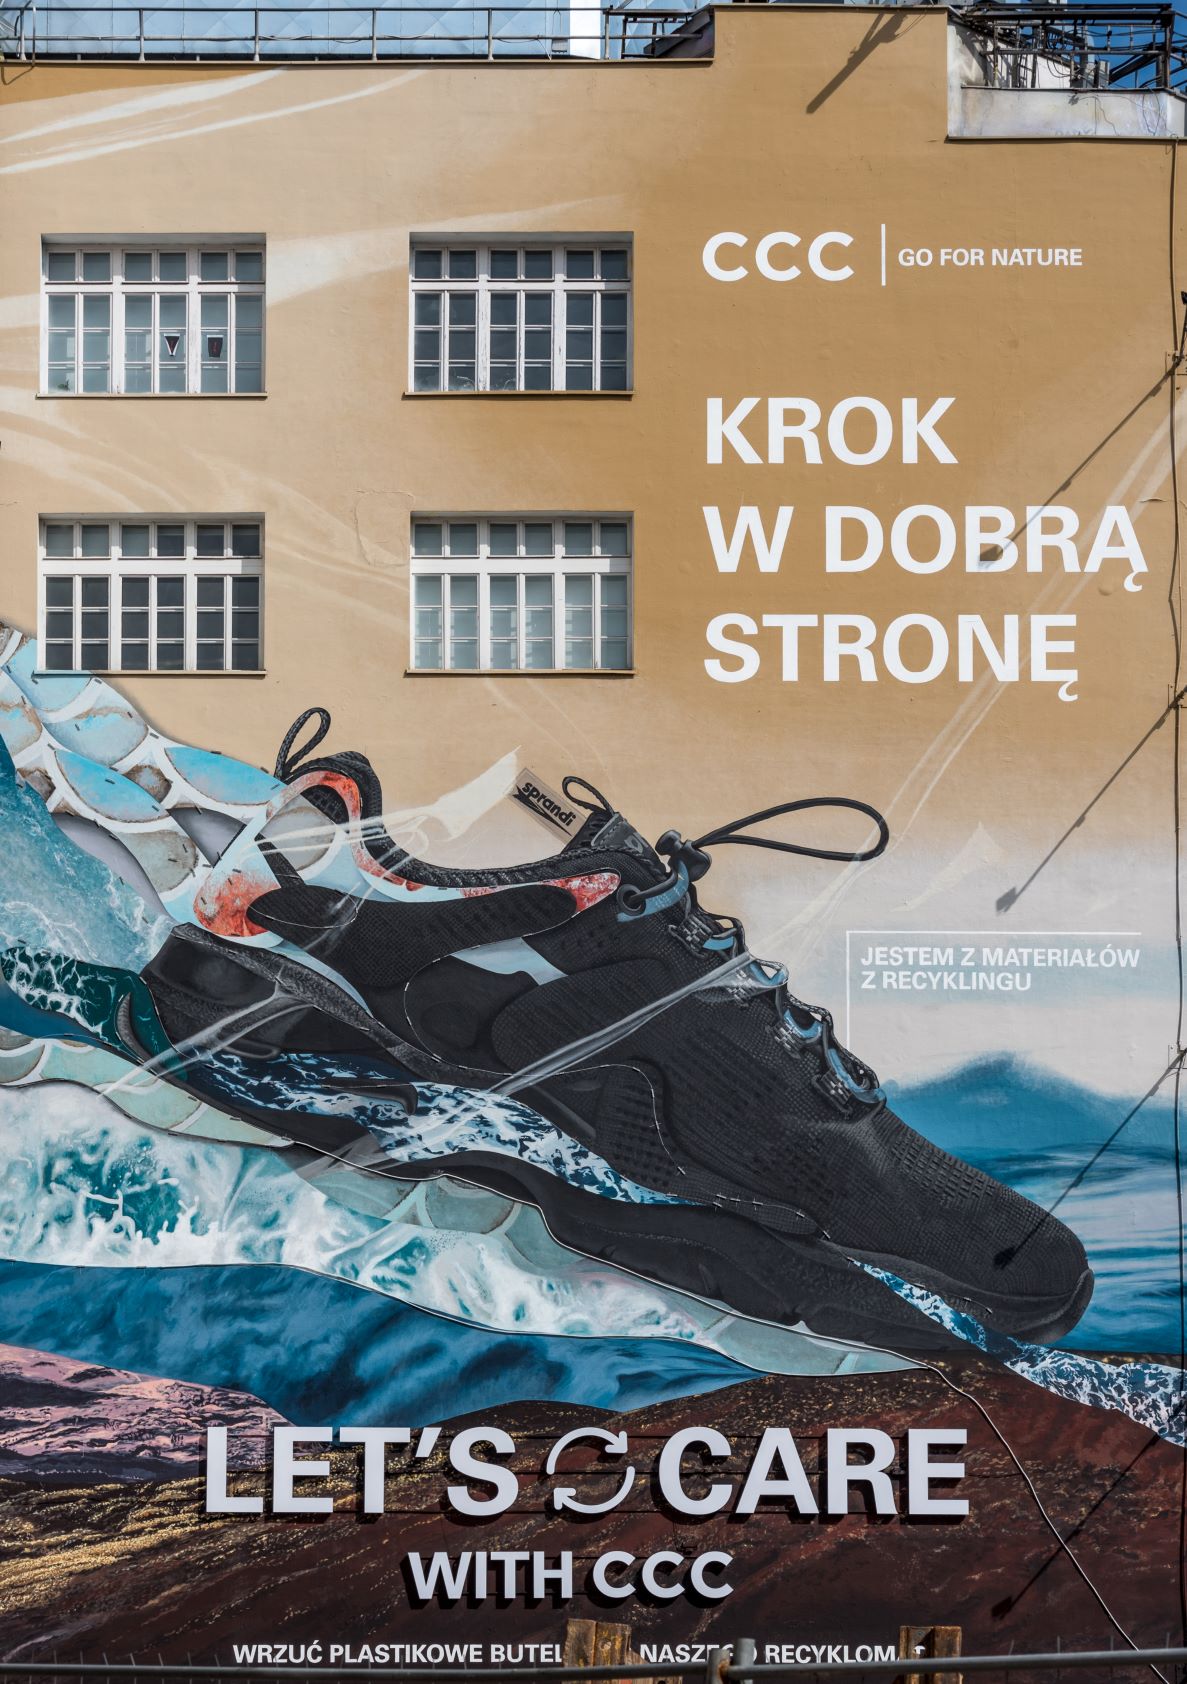 Let’s care with CCC – wyjątkowy mural w centrum Warszawy